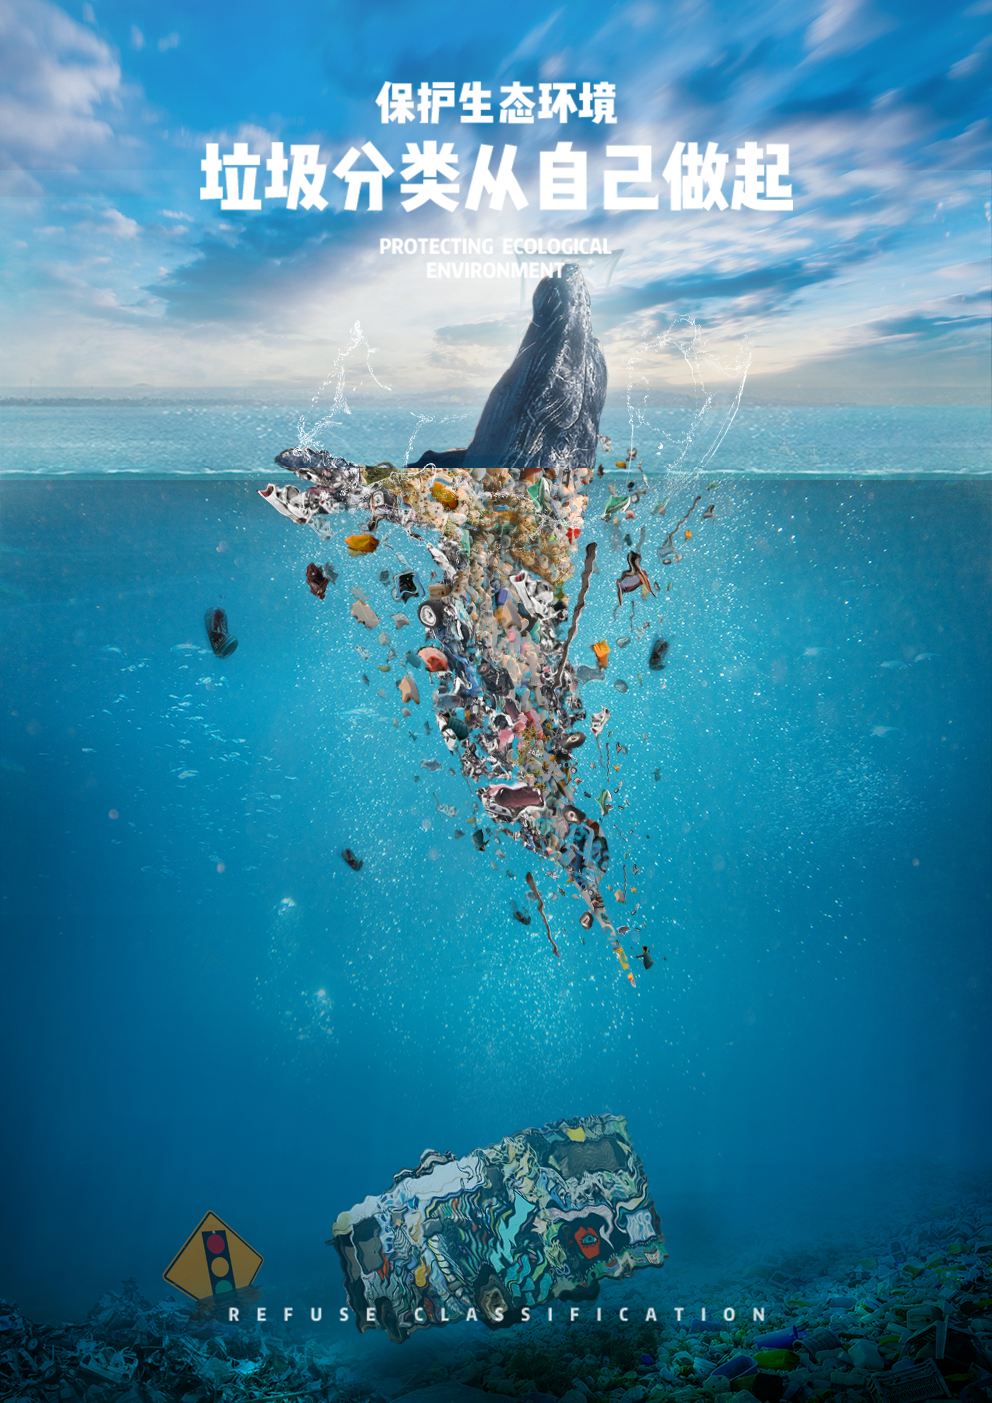 环保海报设计大赛图片